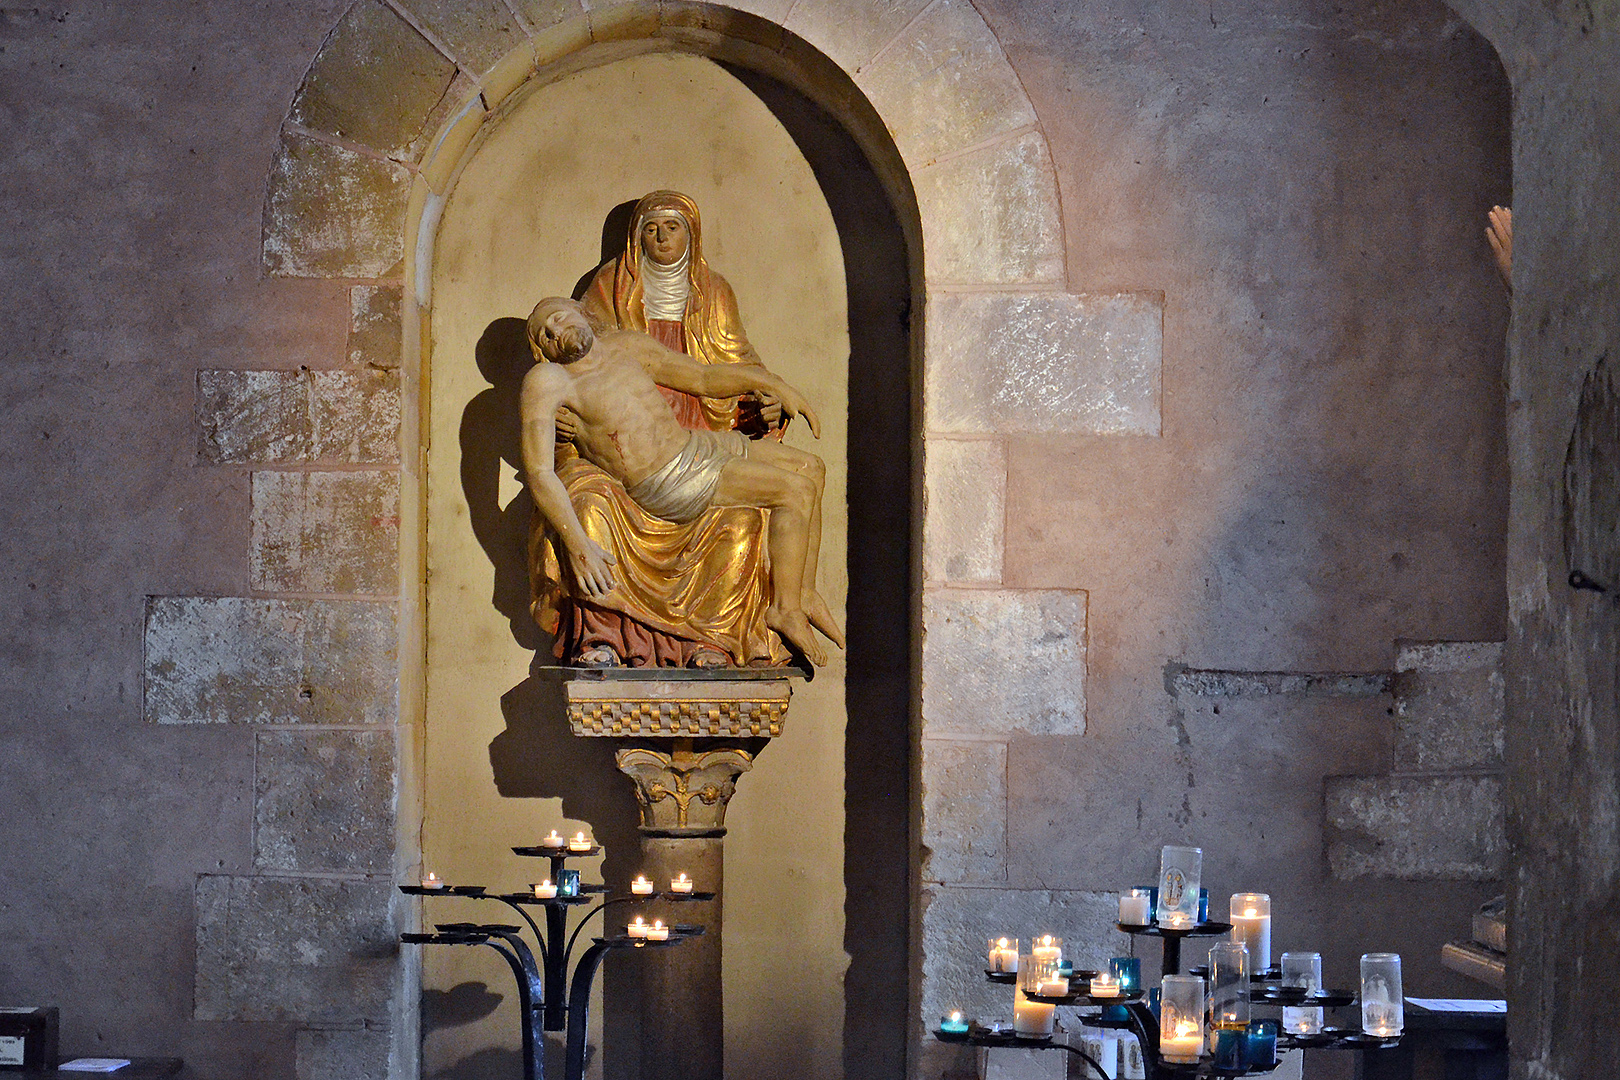 Abdijkerk van Sainte-Foy, Conques, Frankrijk; Abbey Church of Saint Foy, Conques, France